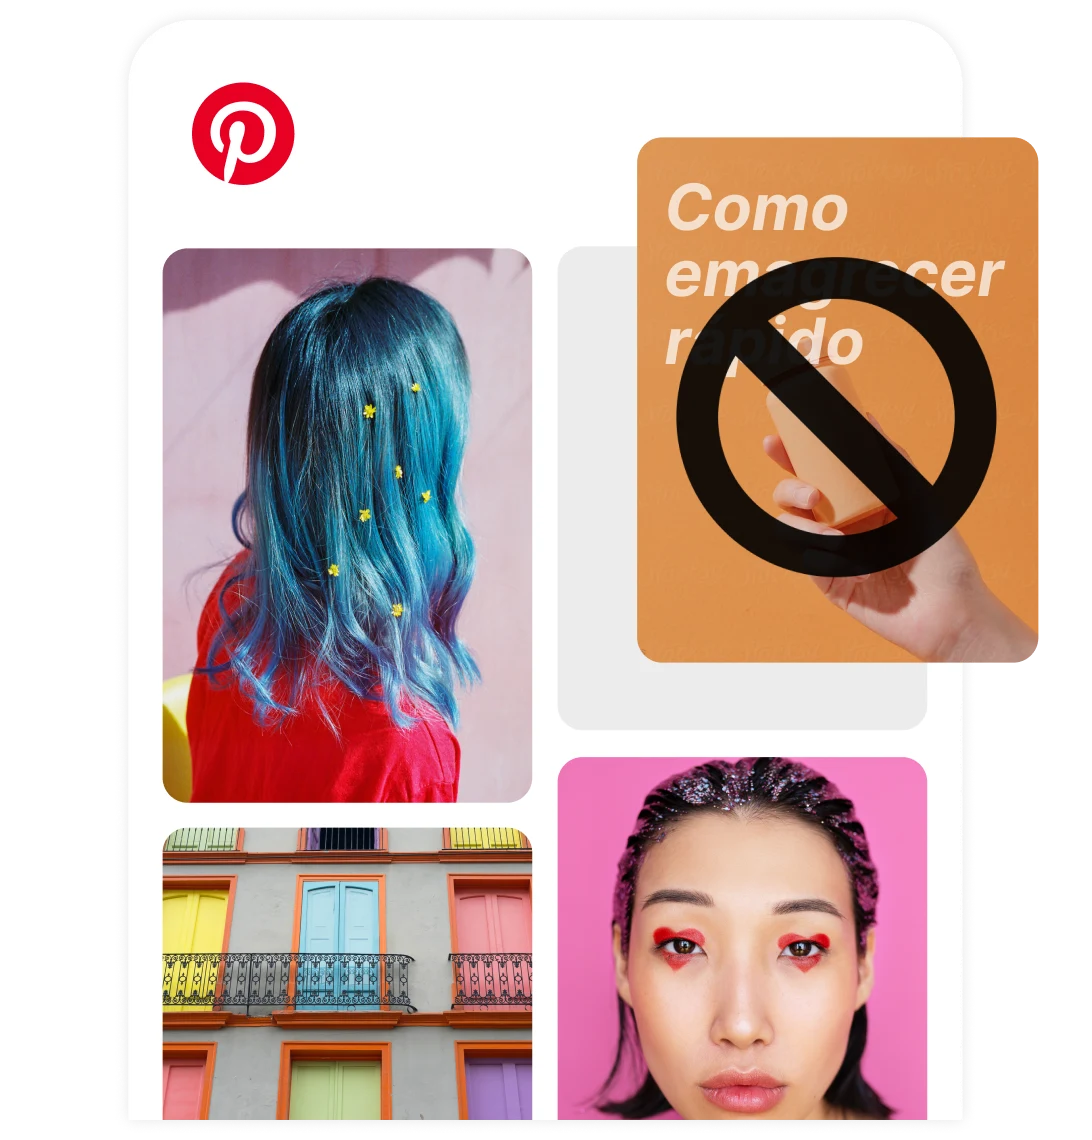 Feed inicial do Pinterest mostrando diferentes Pins, como um sobre emagrecimento marcado com o símbolo "Não" em negrito.